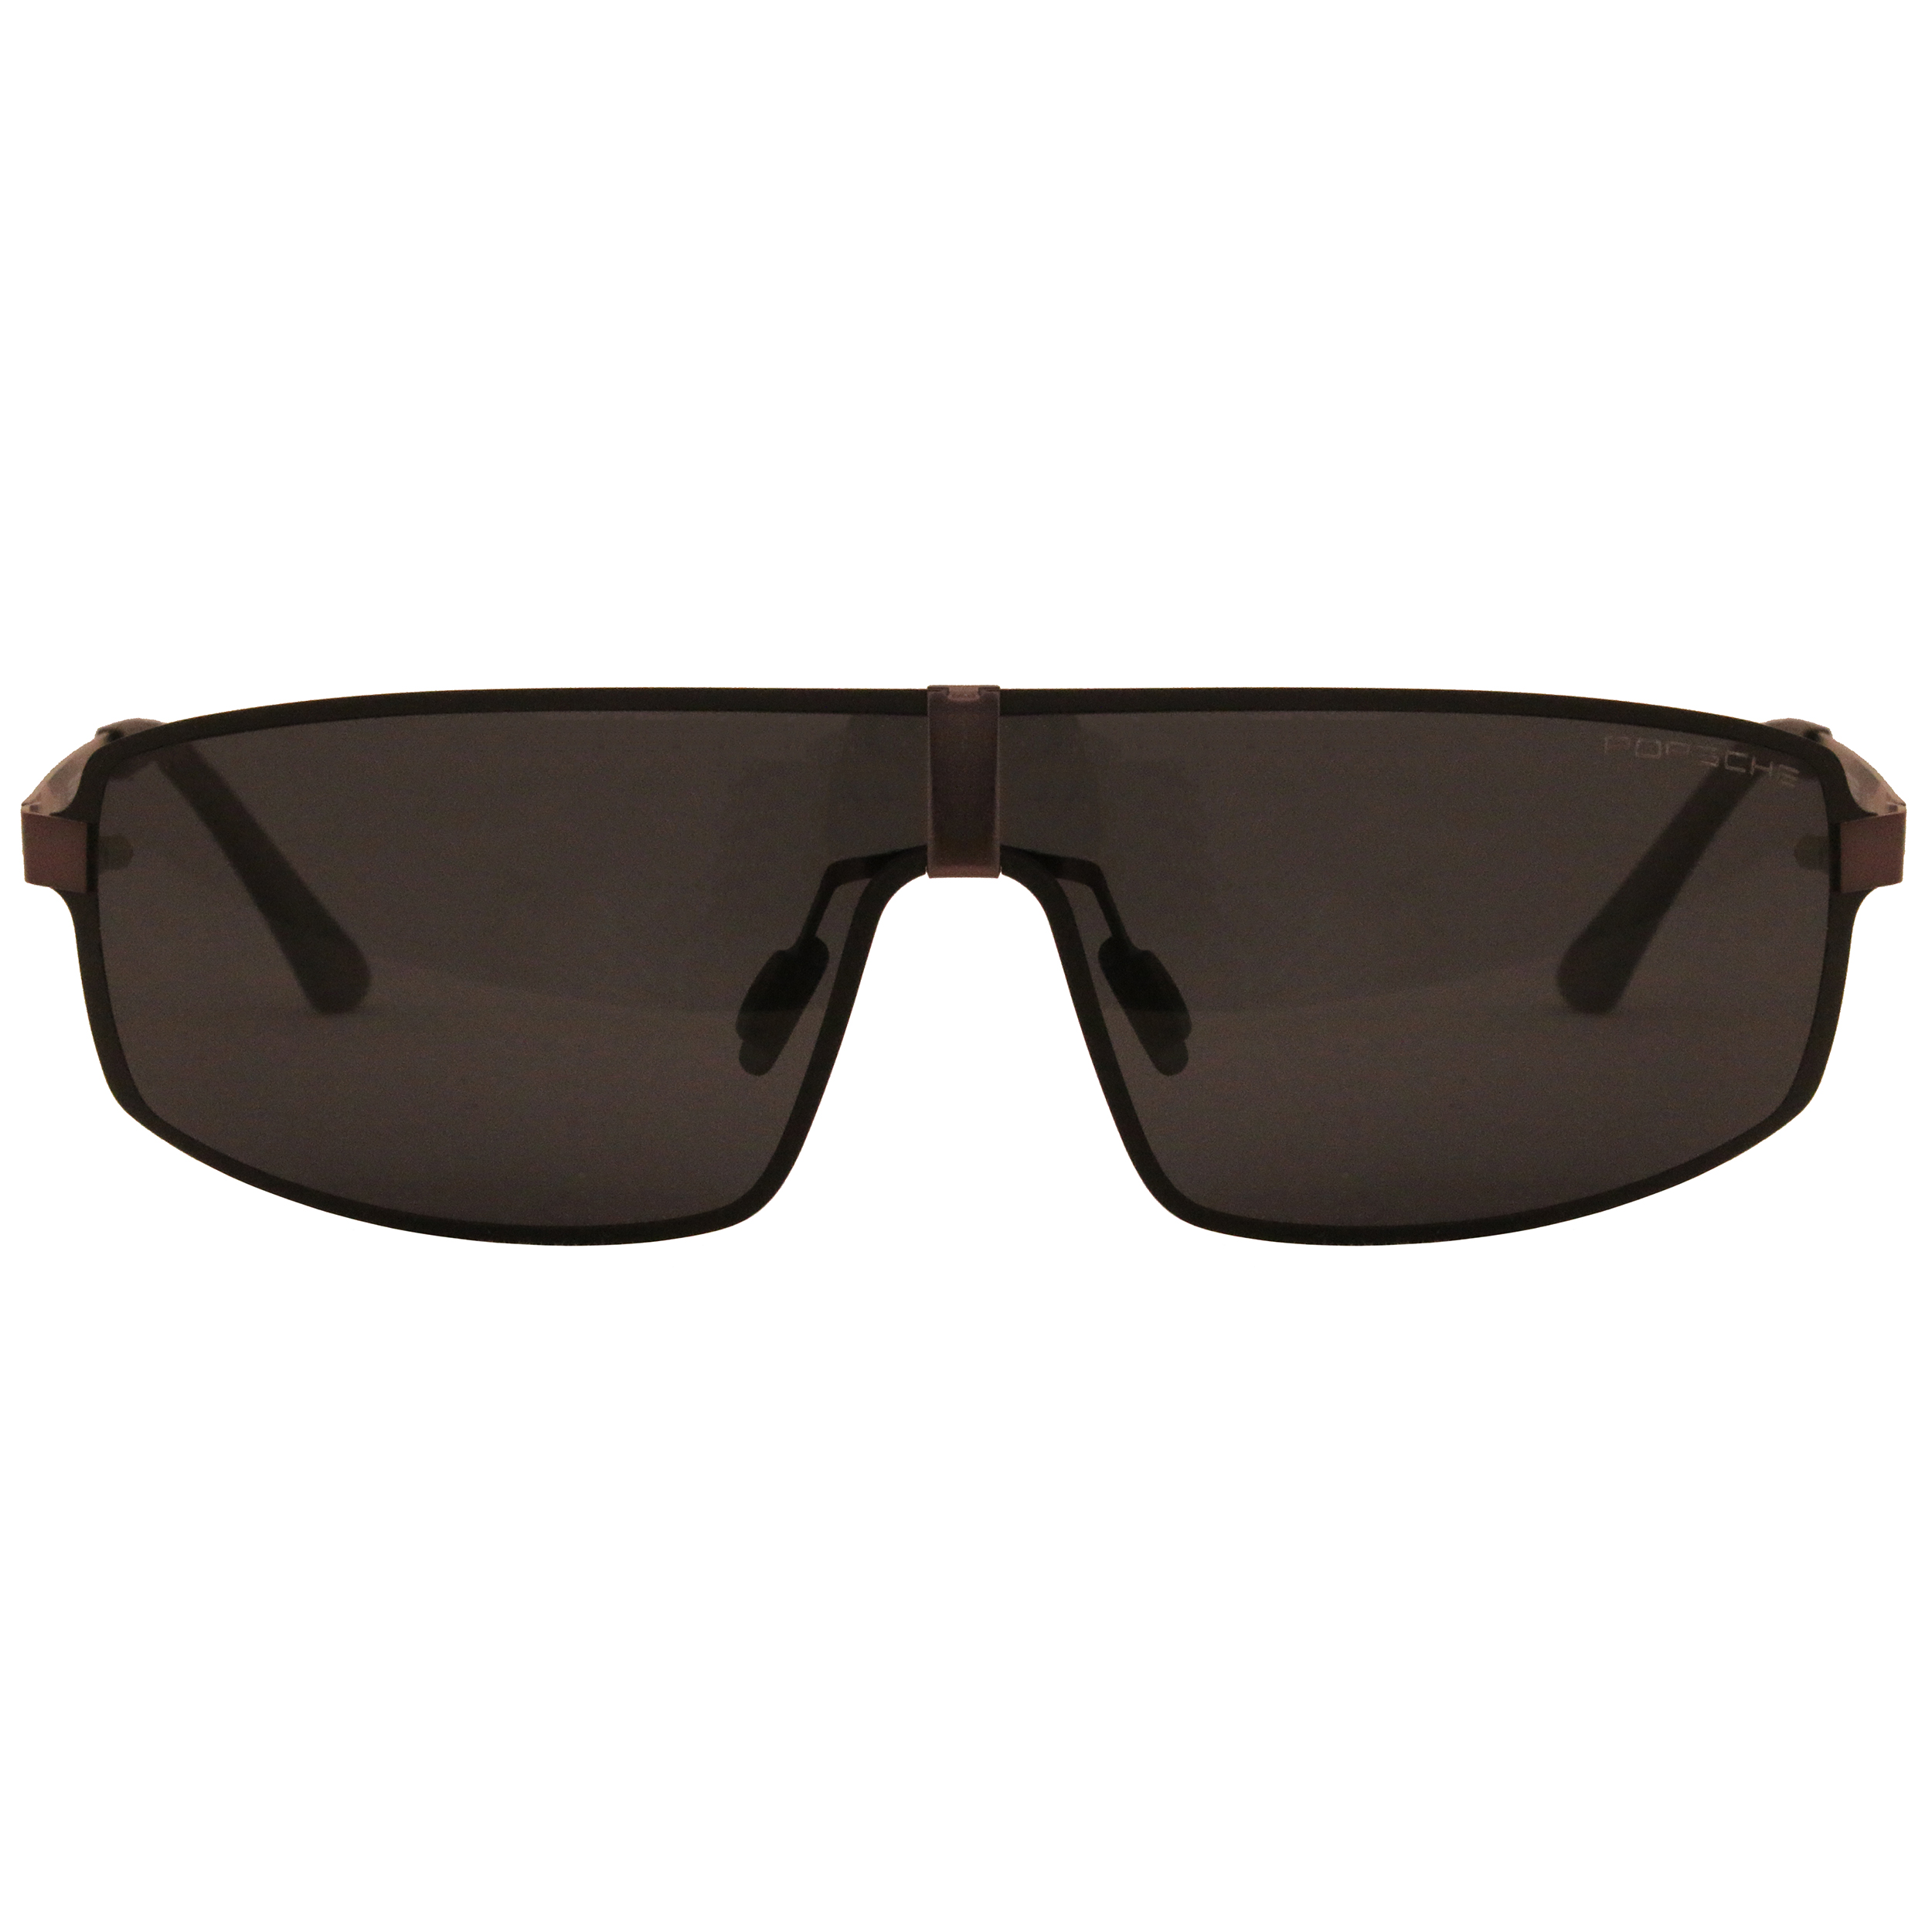 عینک آفتابی پورش دیزاین مدل P8839-C3 -  - 2